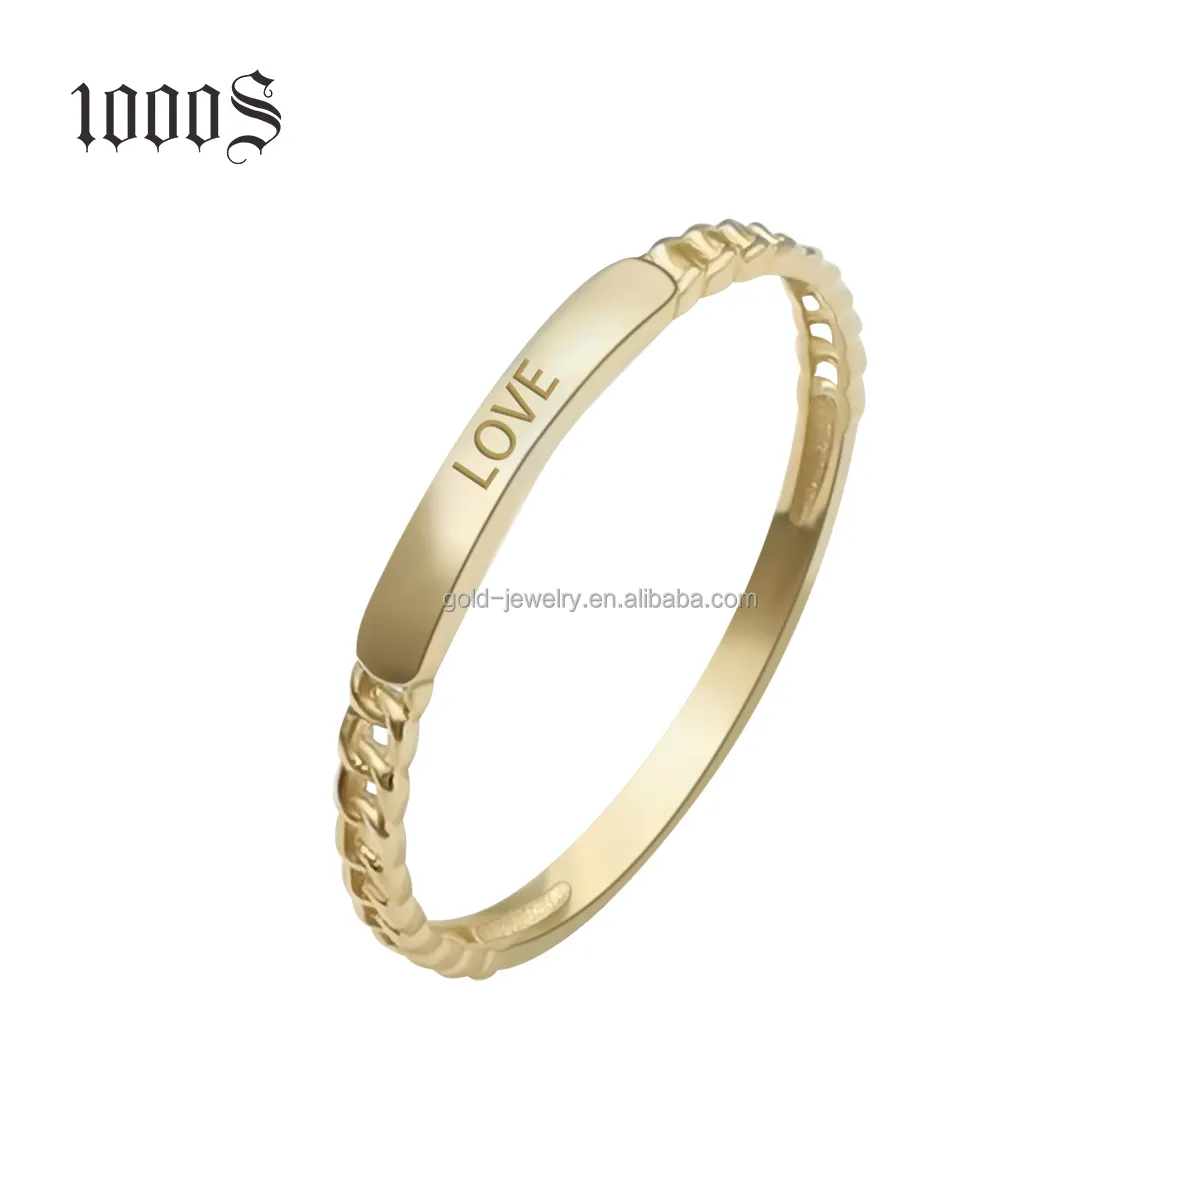 Женское кольцо с золотым сердечком и надписью, модное кольцо в подарок, 9K, 14K, настоящее золото, модное ювелирное изделие, кольцо на палец, обручальные кольца или кольца